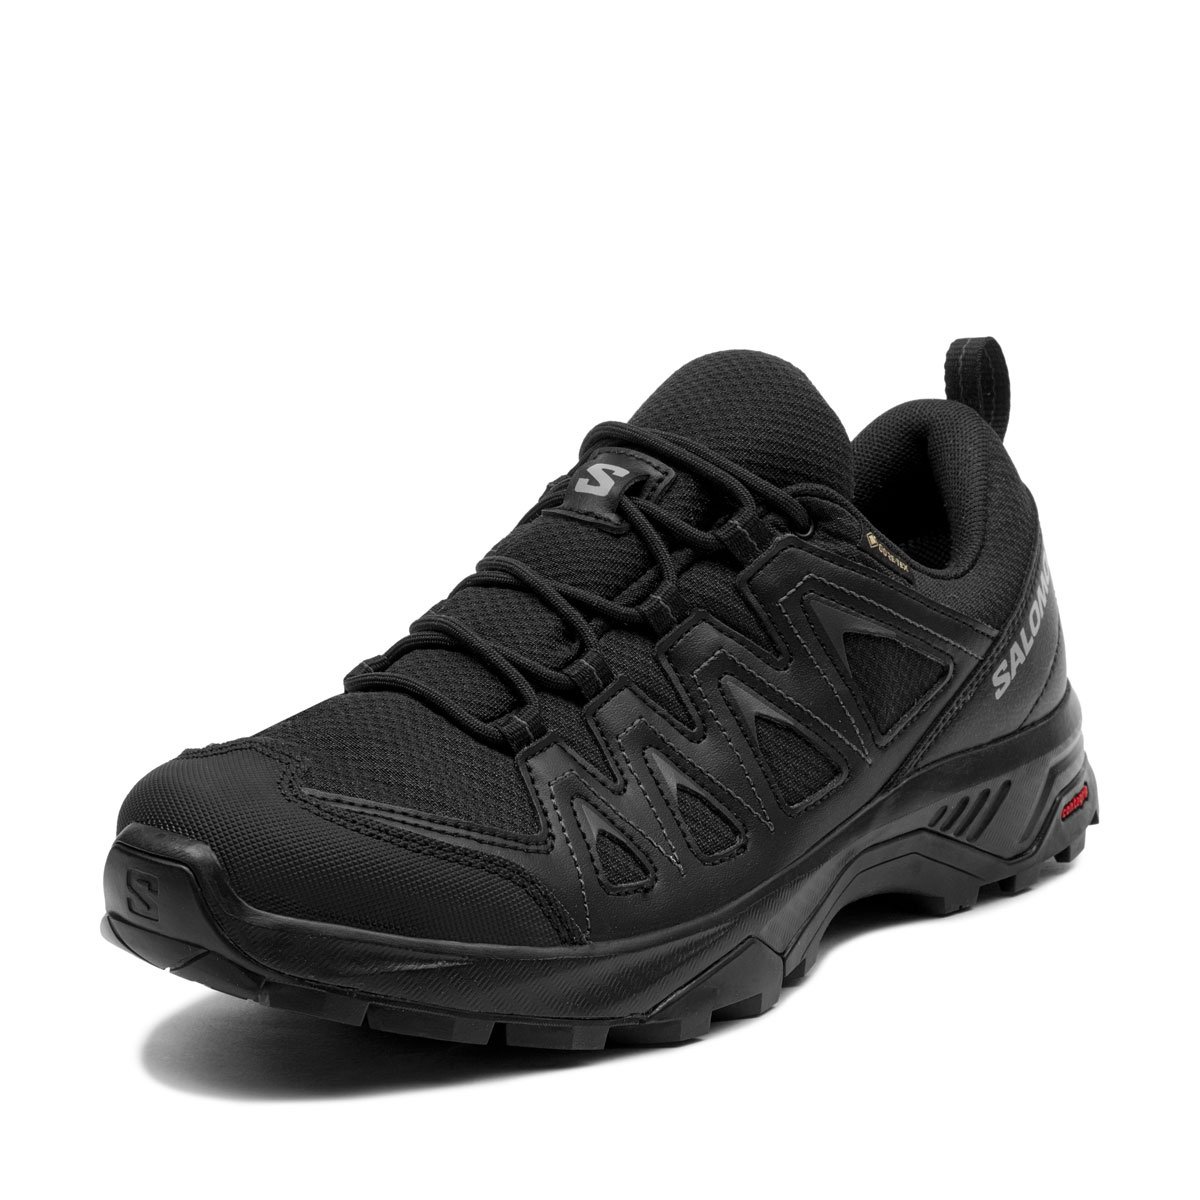 Salomon X Braze Gore-Tex Мъжки спортни обувки 471804